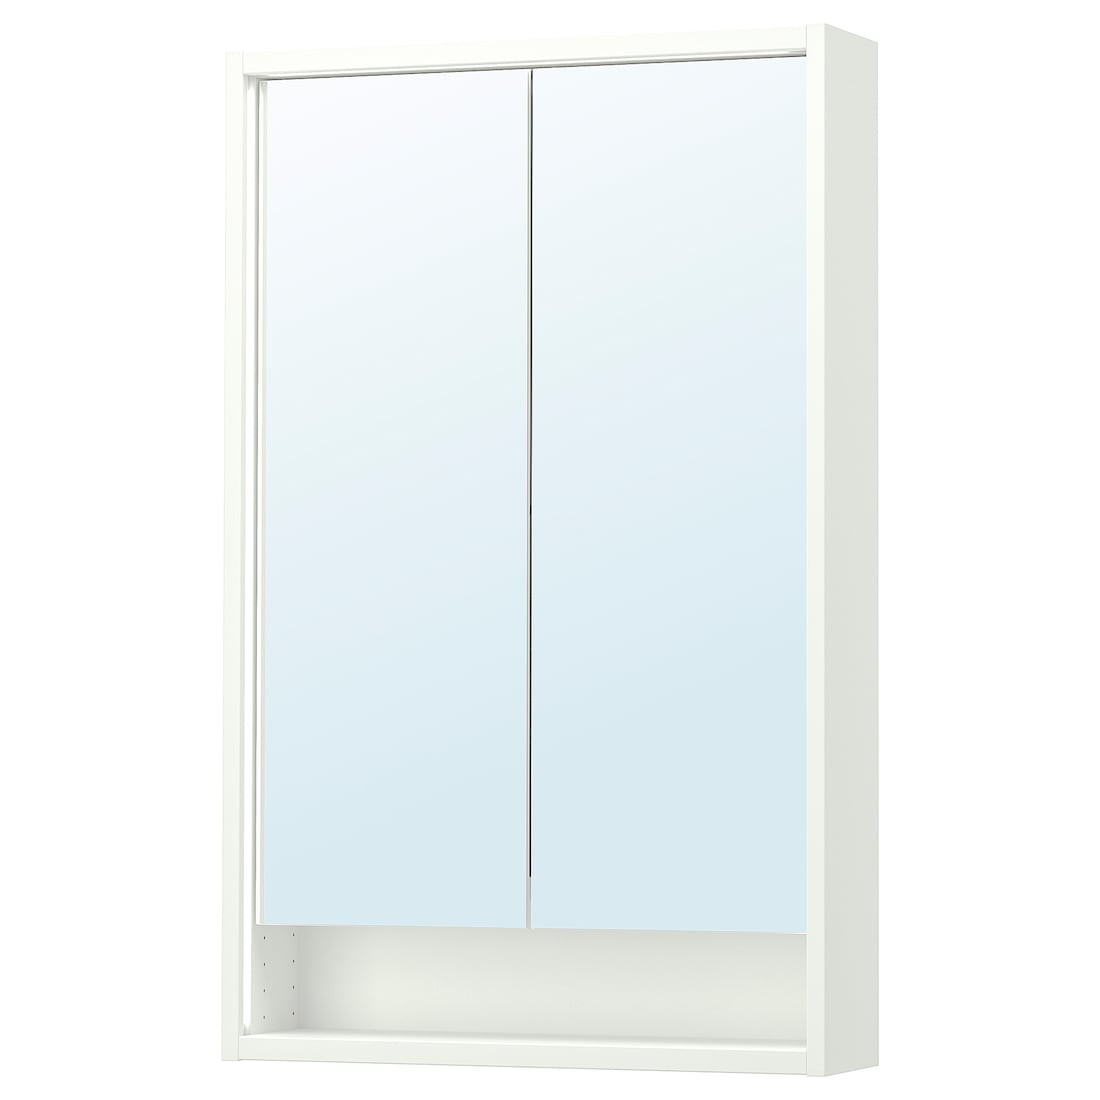 FAXÄLVEN Зеркальный шкаф со встроенной подсветкой, белый, 60x15x95 см